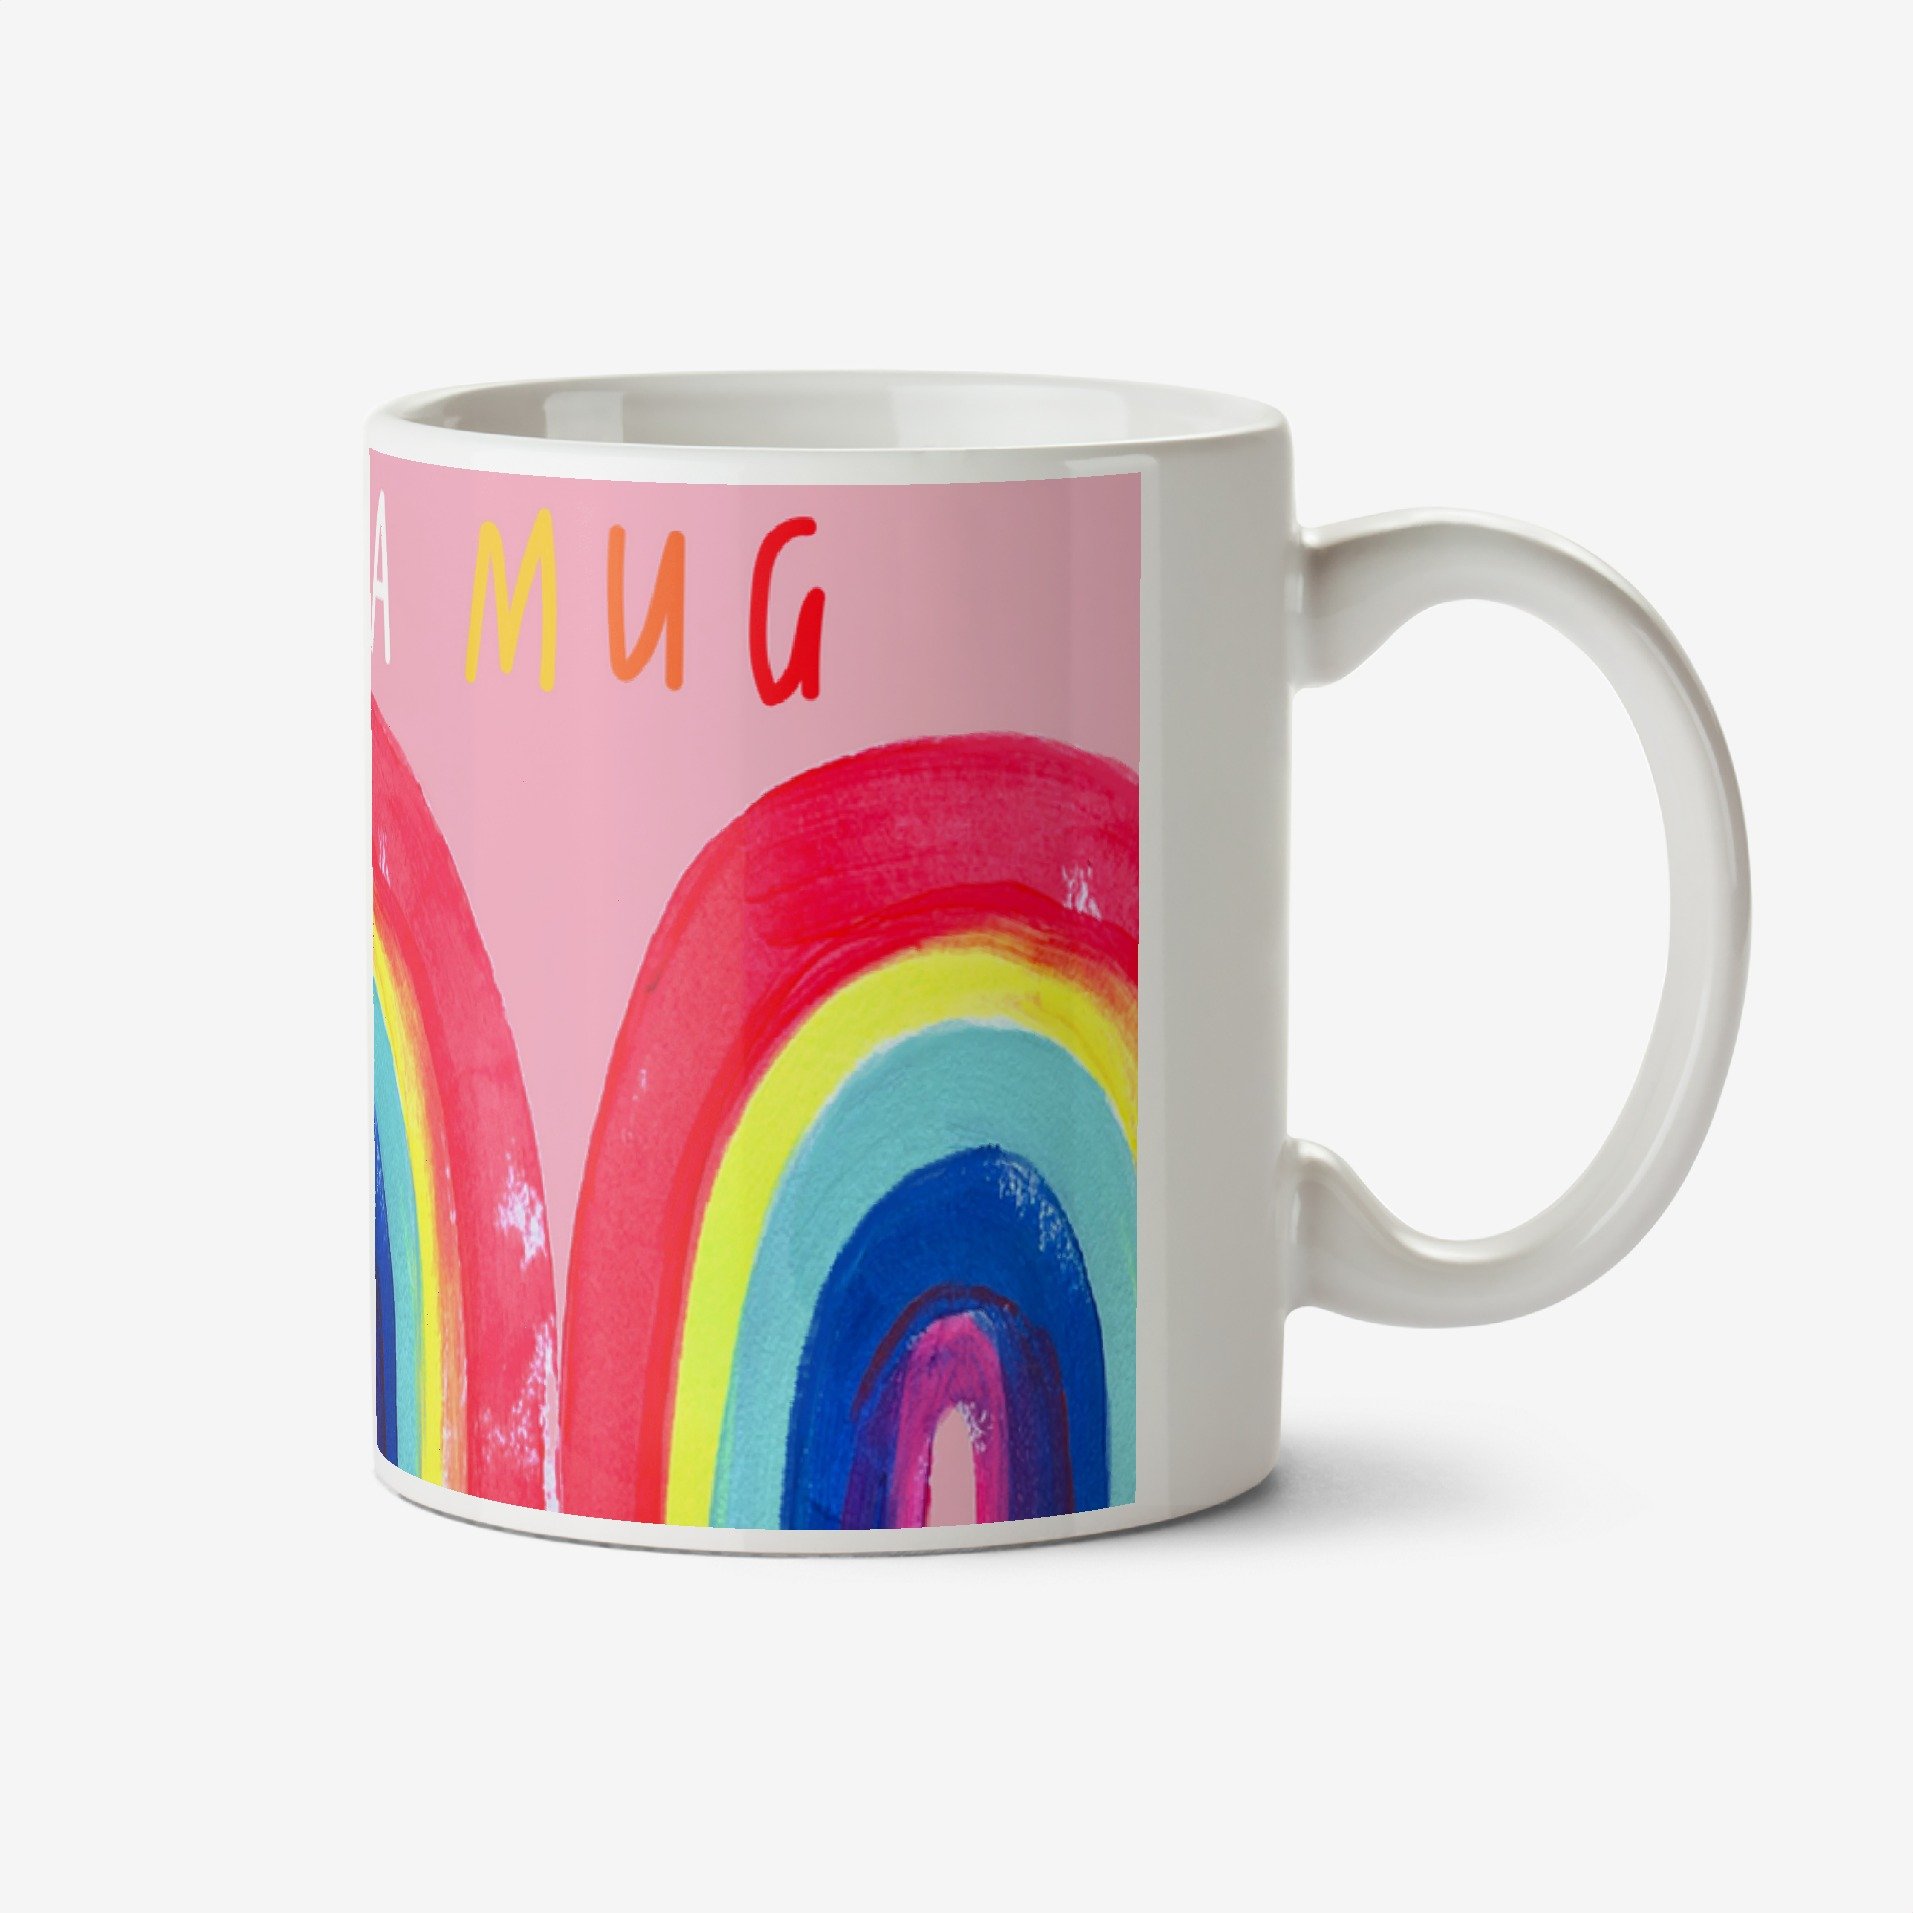 Moonpig Katt Jones Hula Fig Hug In A Mug Hand Painted Rainbows Mug Ceramic Mug